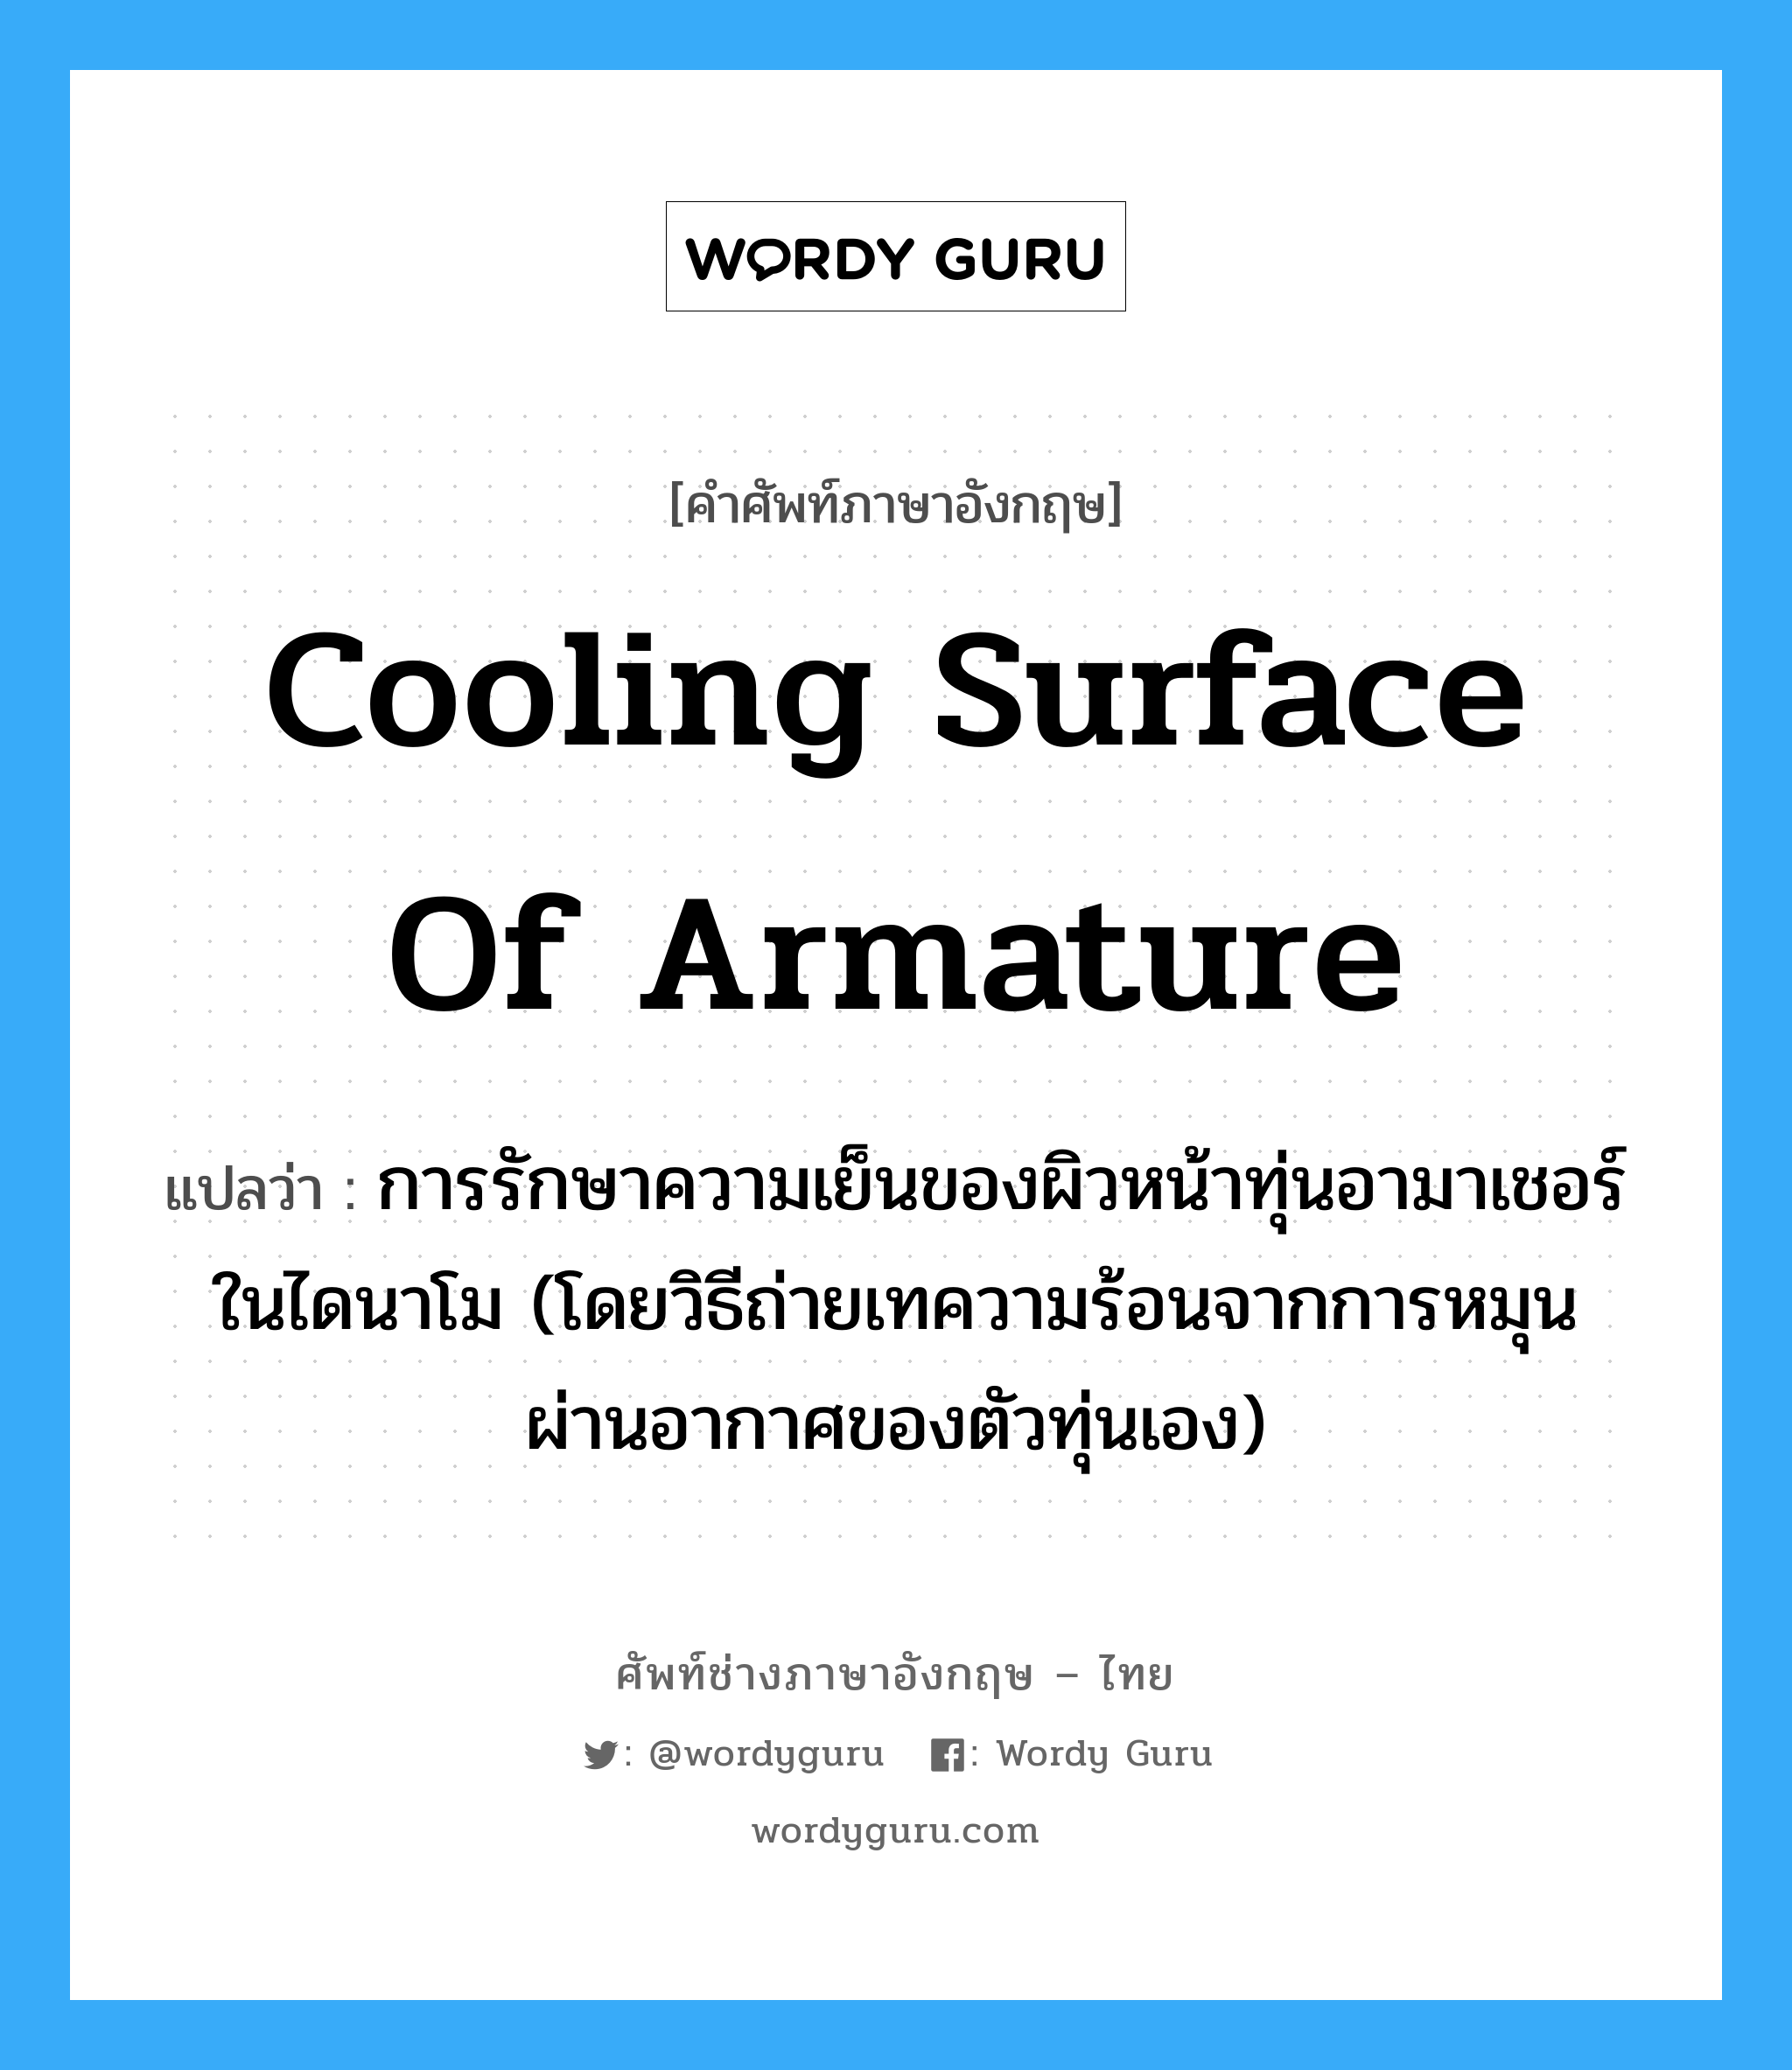 cooling surface of armature แปลว่า?, คำศัพท์ช่างภาษาอังกฤษ - ไทย cooling surface of armature คำศัพท์ภาษาอังกฤษ cooling surface of armature แปลว่า การรักษาความเย็นของผิวหน้าทุ่นอามาเชอร์ในไดนาโม (โดยวิธีถ่ายเทความร้อนจากการหมุนผ่านอากาศของตัวทุ่นเอง)